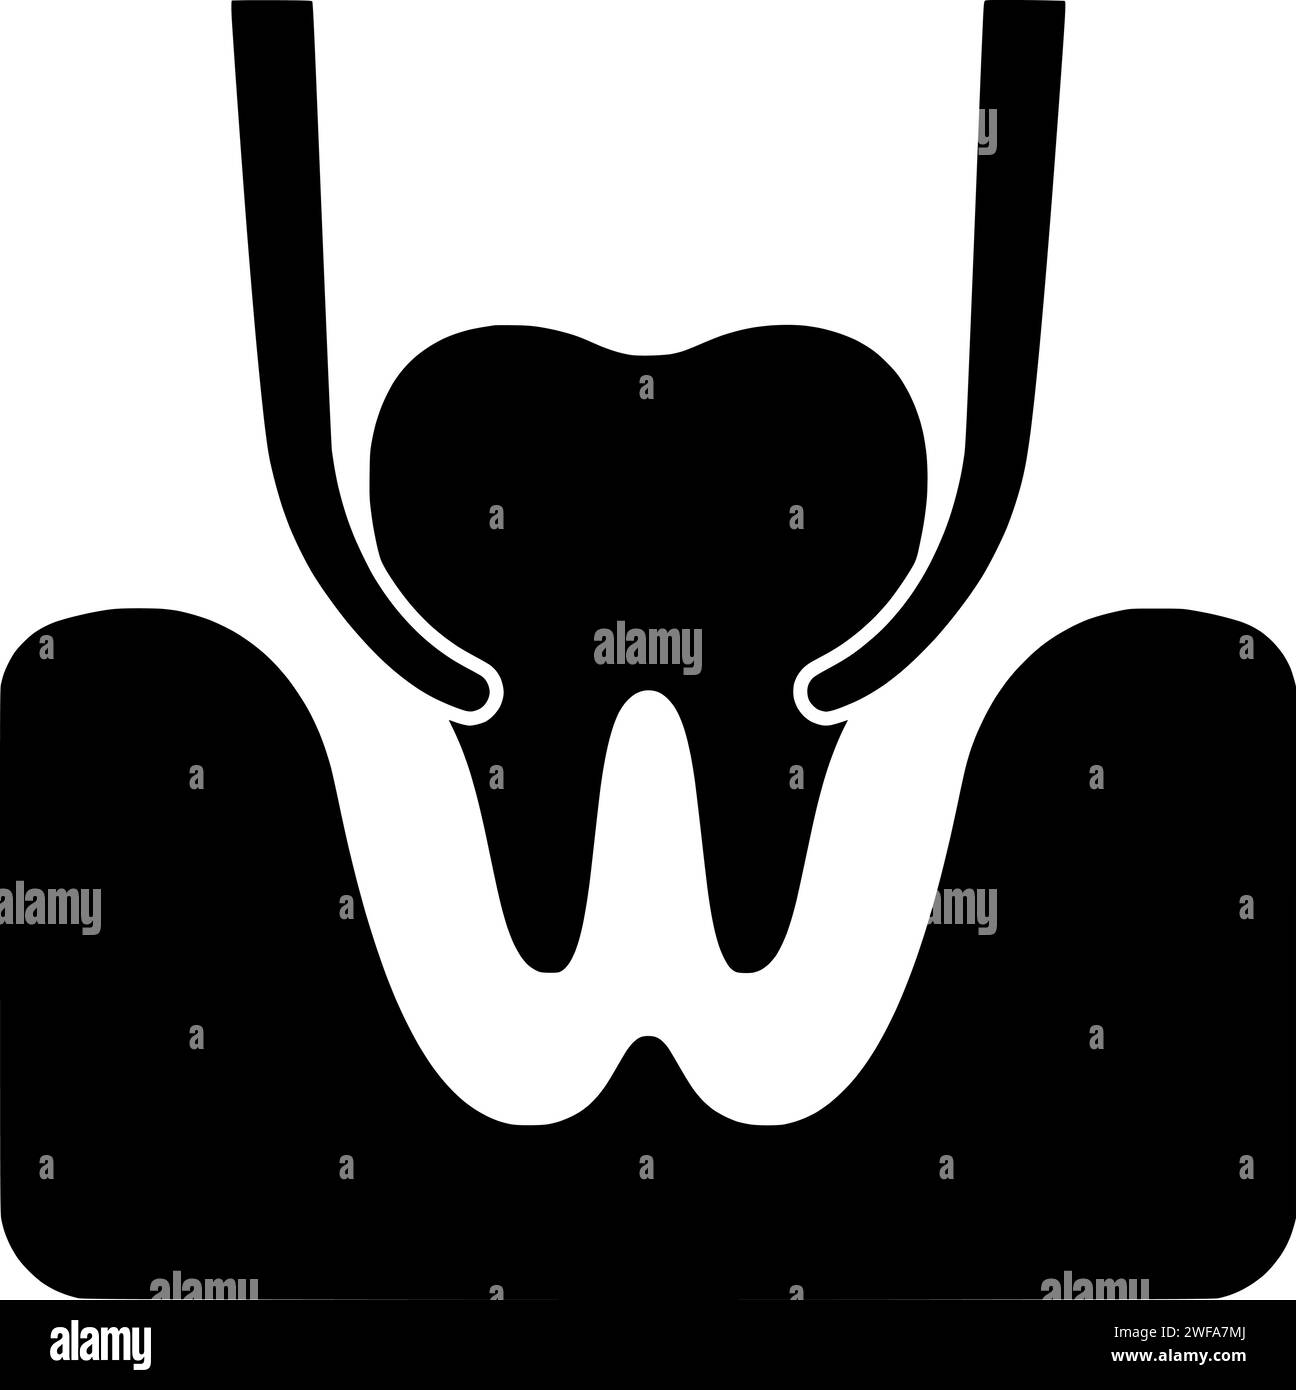 Dental Illustration Hygiene Silhouette Pflege Logo Zähne Icon Badezimmer Umriss Gesundheit Bürste glückliche Zahnbürste Haus gesunde Zähne Mund saubere Form Kind weiß Kind Stock Vektor